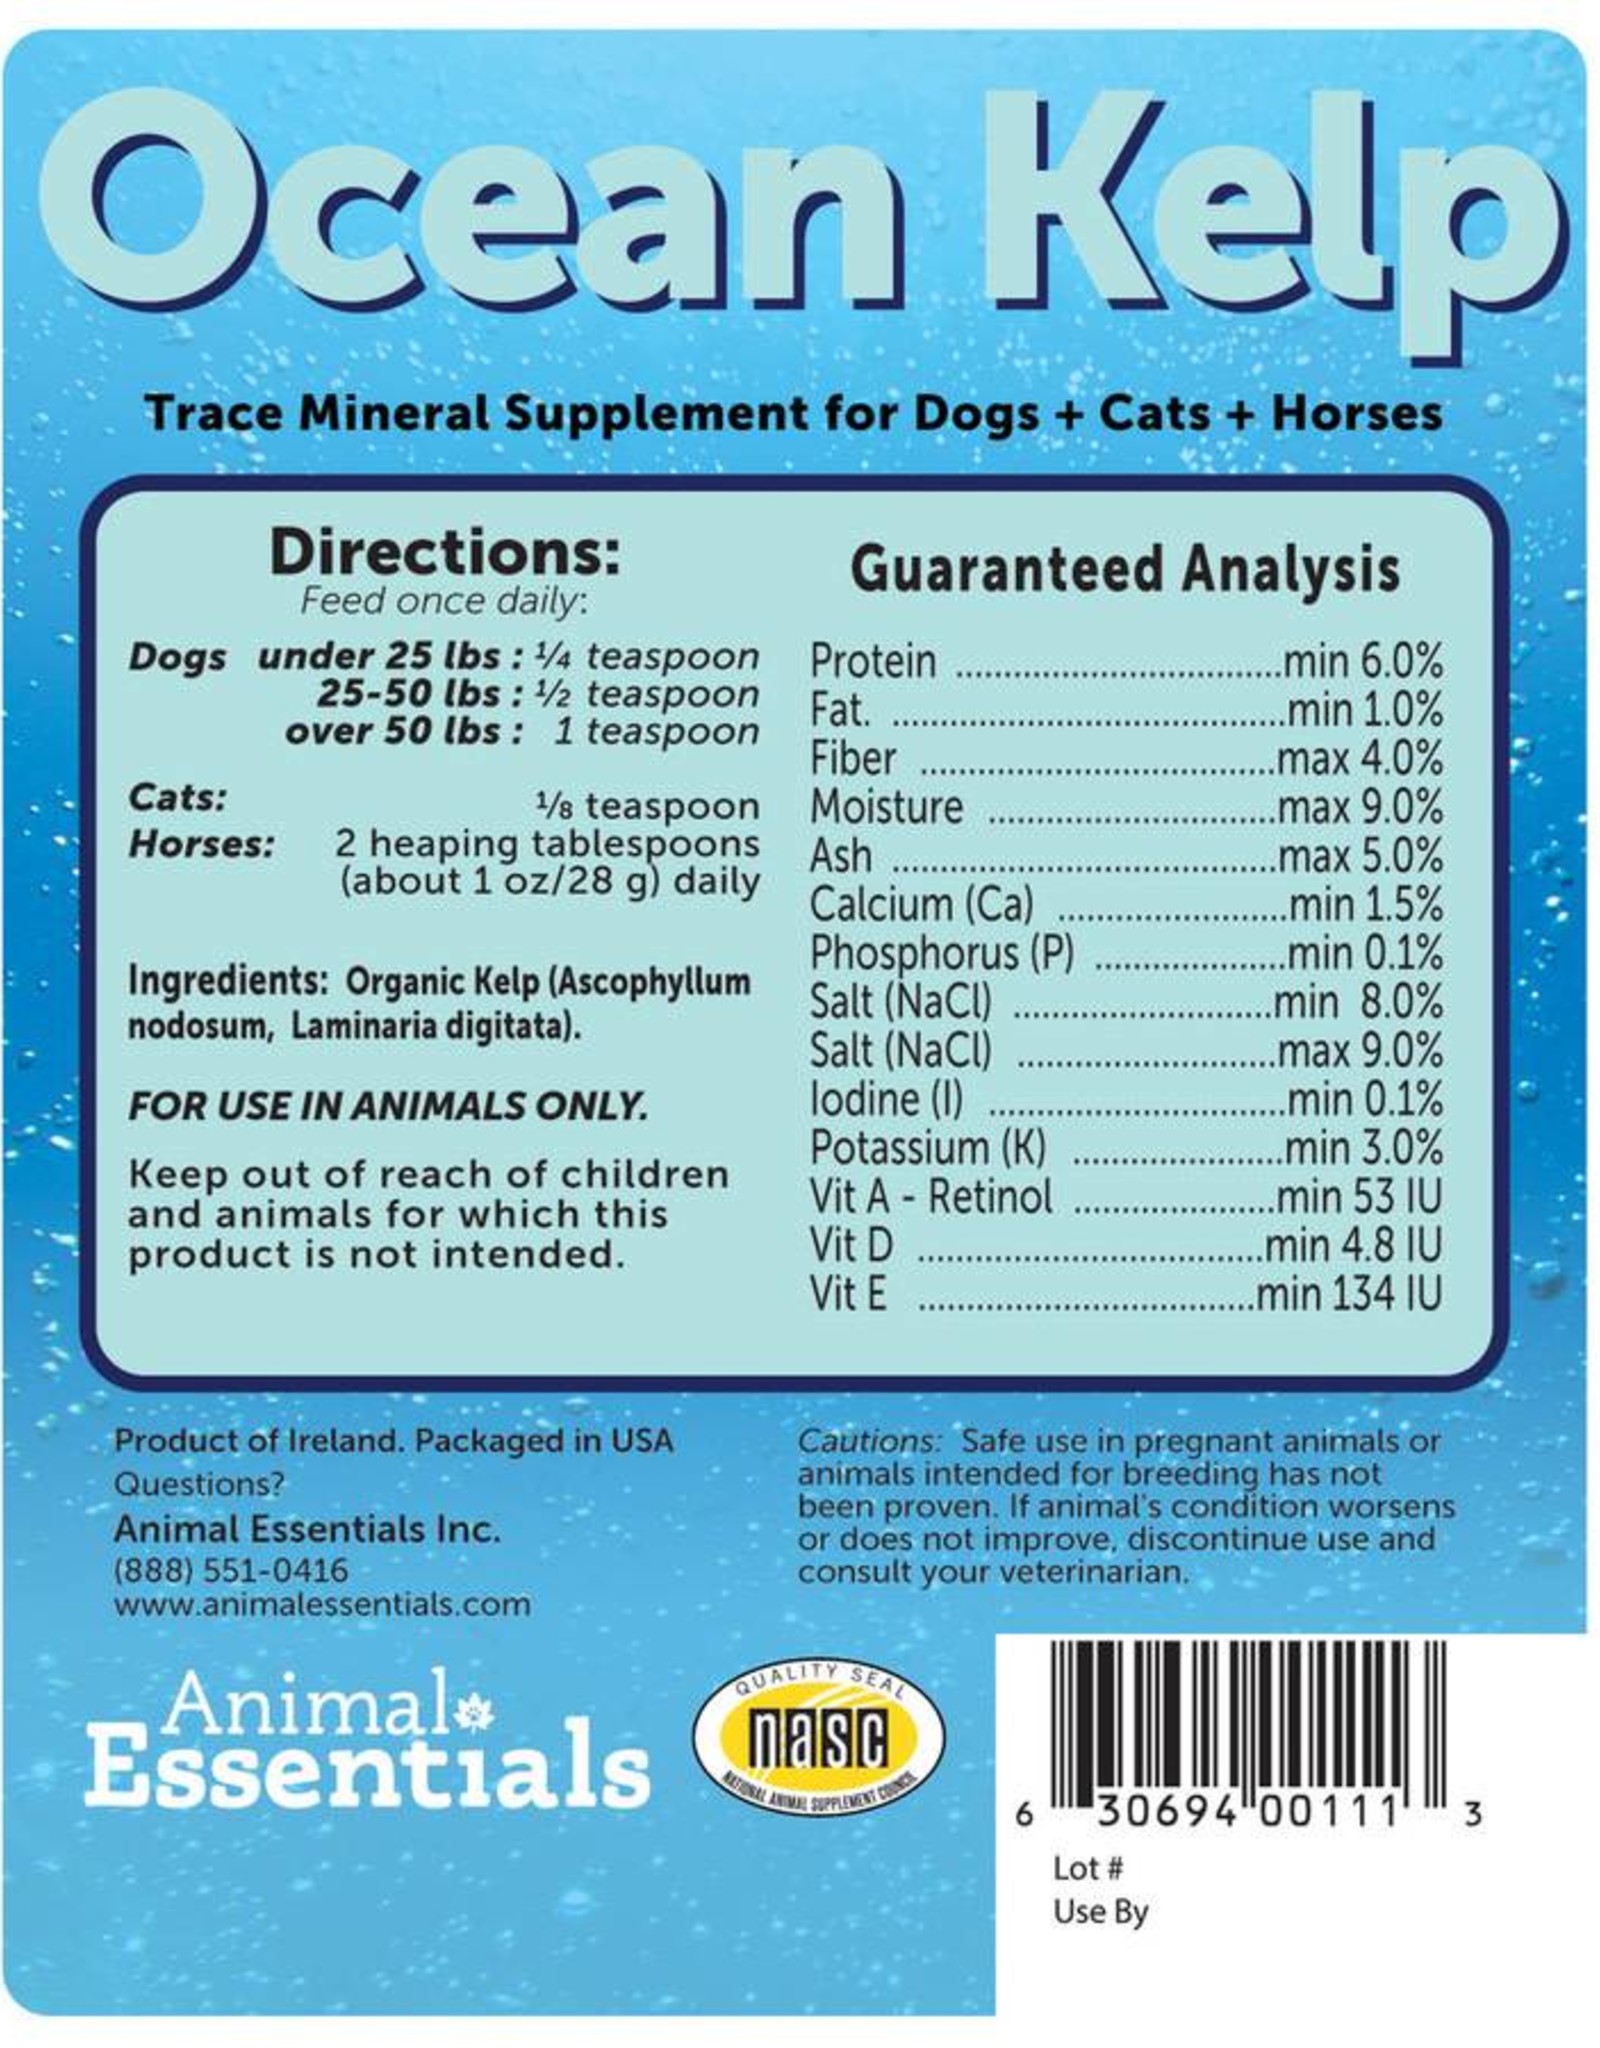 Animal Essentials Animal Essentials Ocean Kelp 24oz